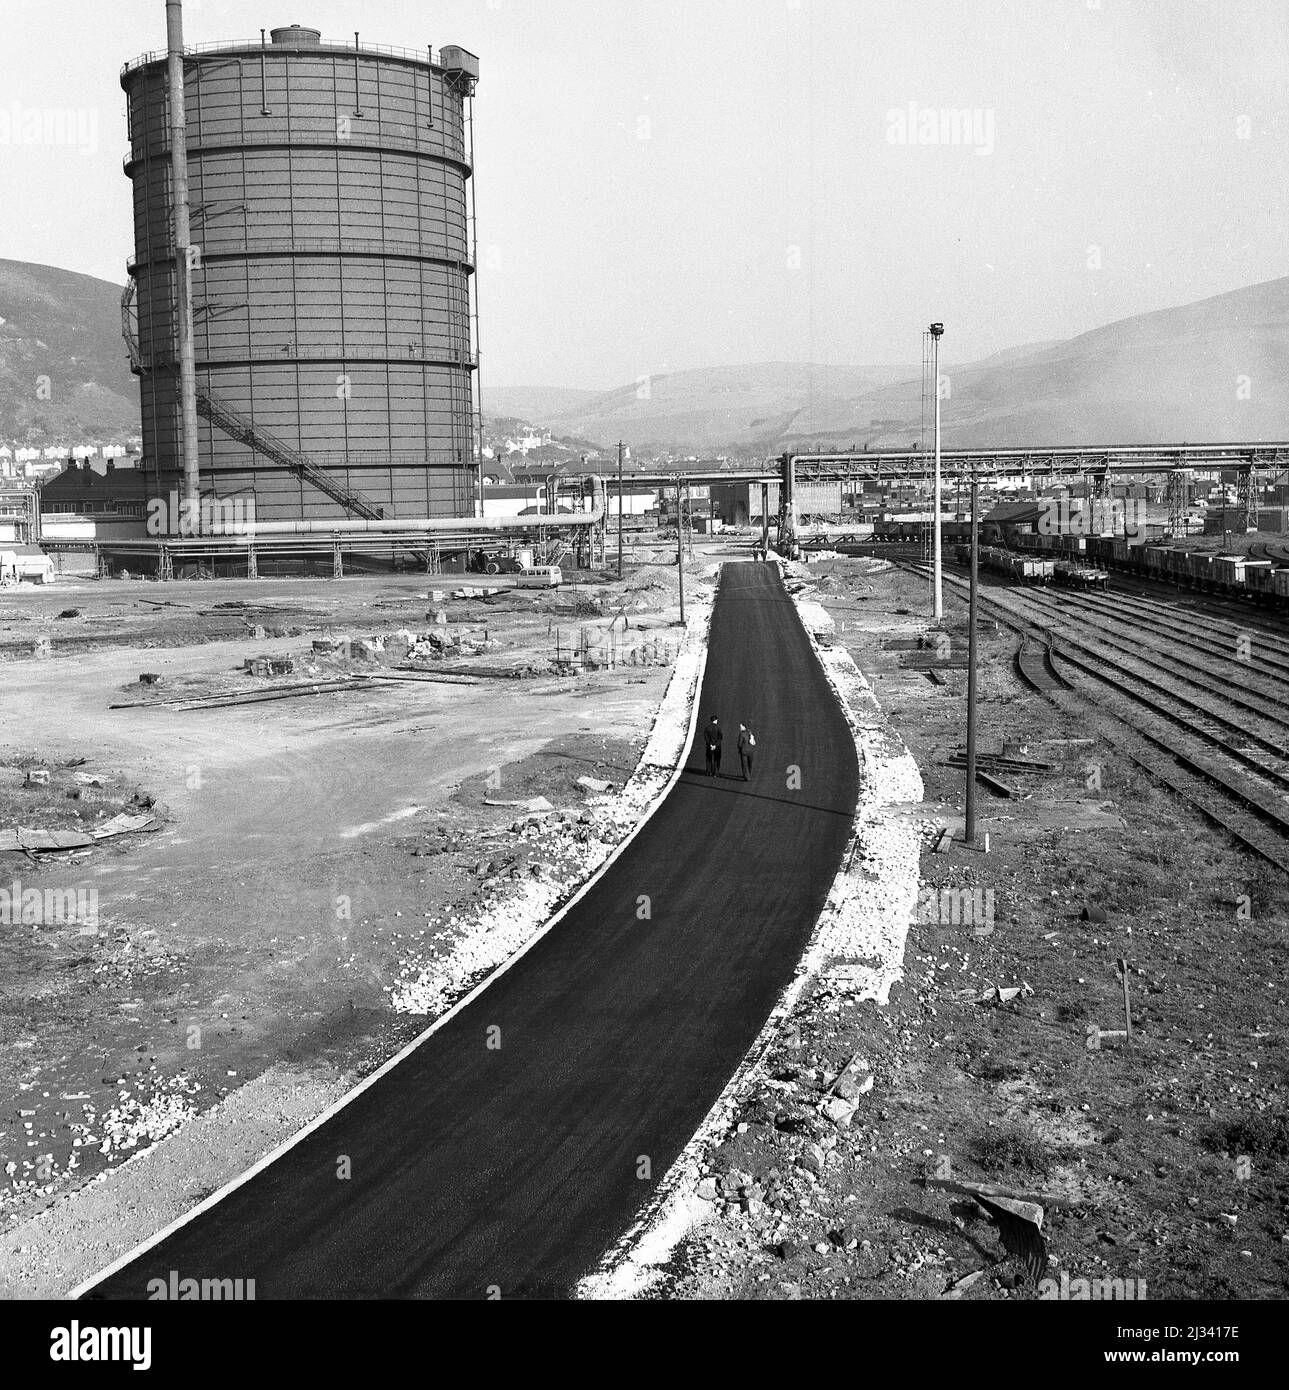 1950, historisch, das riesige Stahlwerk von Abbey Works im Bau, Bild zeigt eine neu verlegte Werkszufahrtsstraße neben den Eisenbahnschienen, Port Talbot, Wales, Großbritannien. Stockfoto